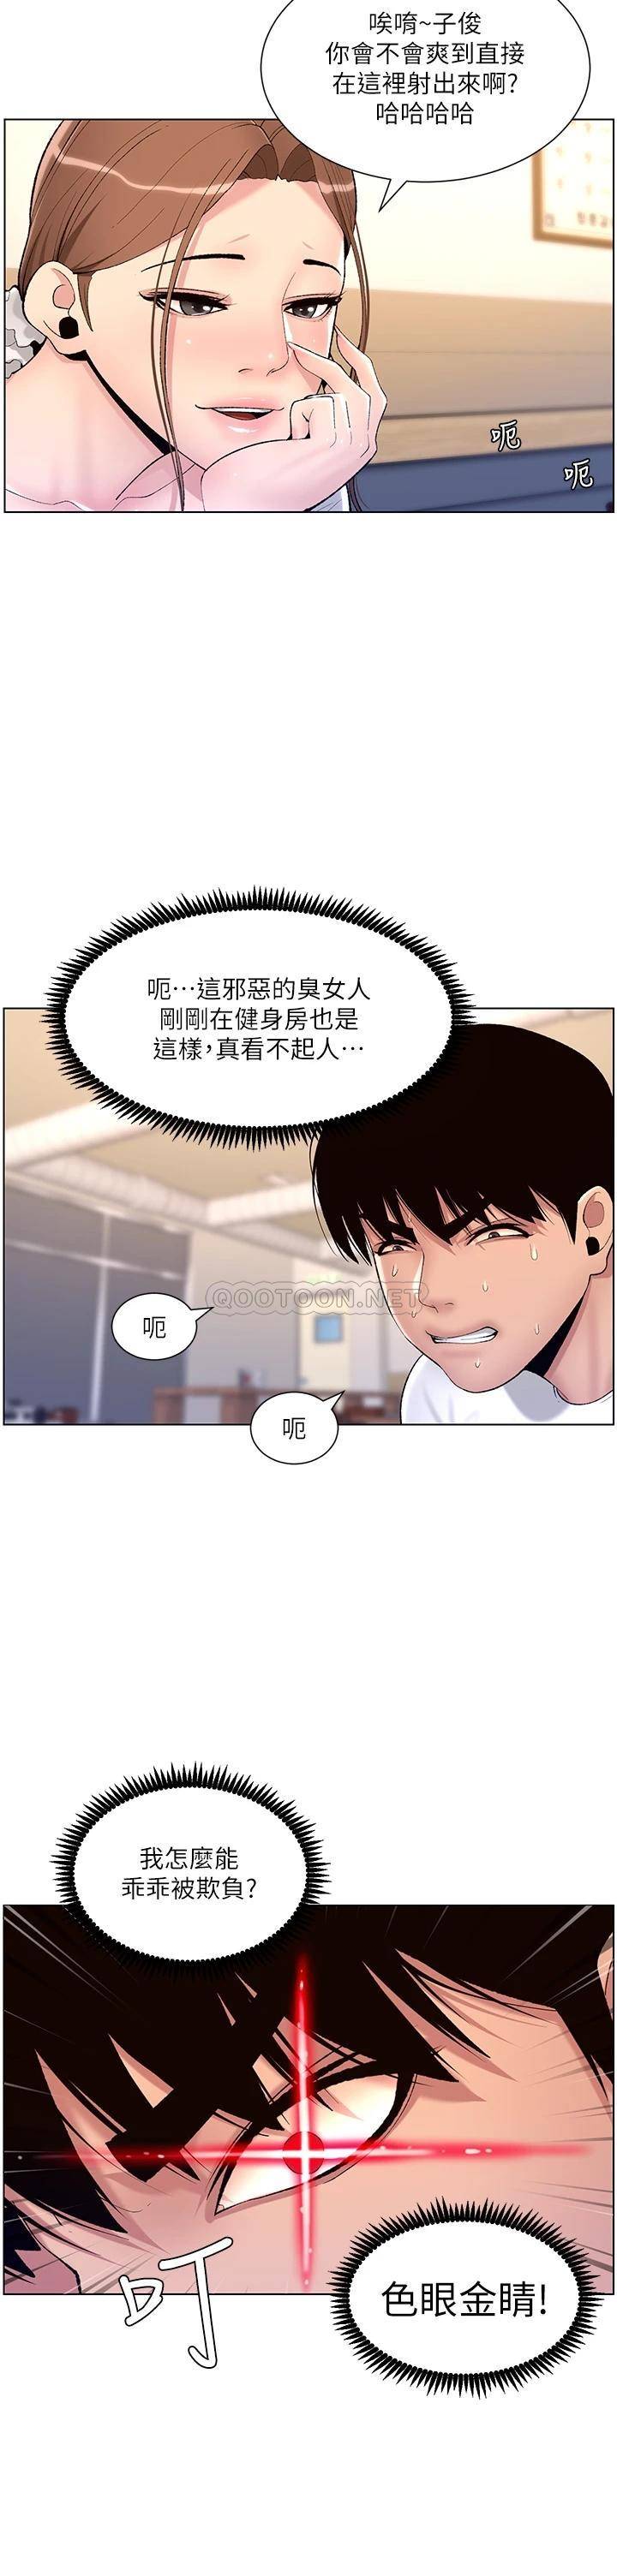 韩国污漫画 帝王App 第14话 綑绑play初体验 6